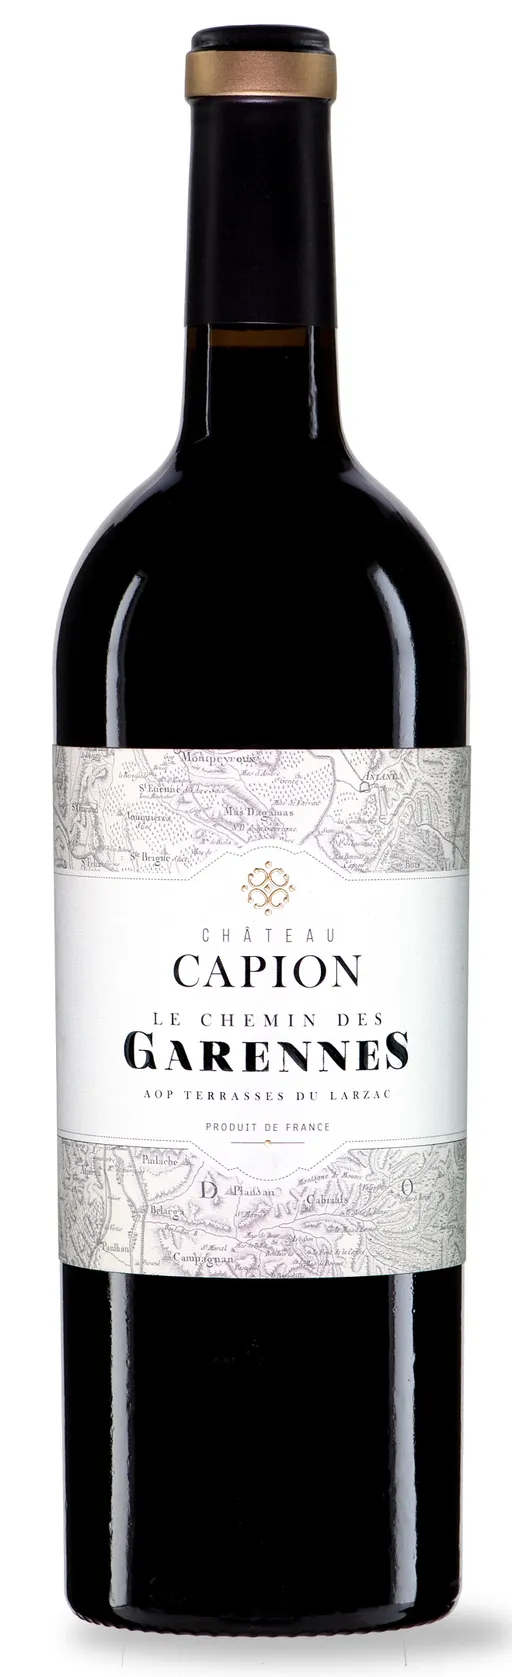 Château Capion Le Chemin des Garennes, Rosso, 2017, Terrasses du Larzac. Immagine della bottiglia